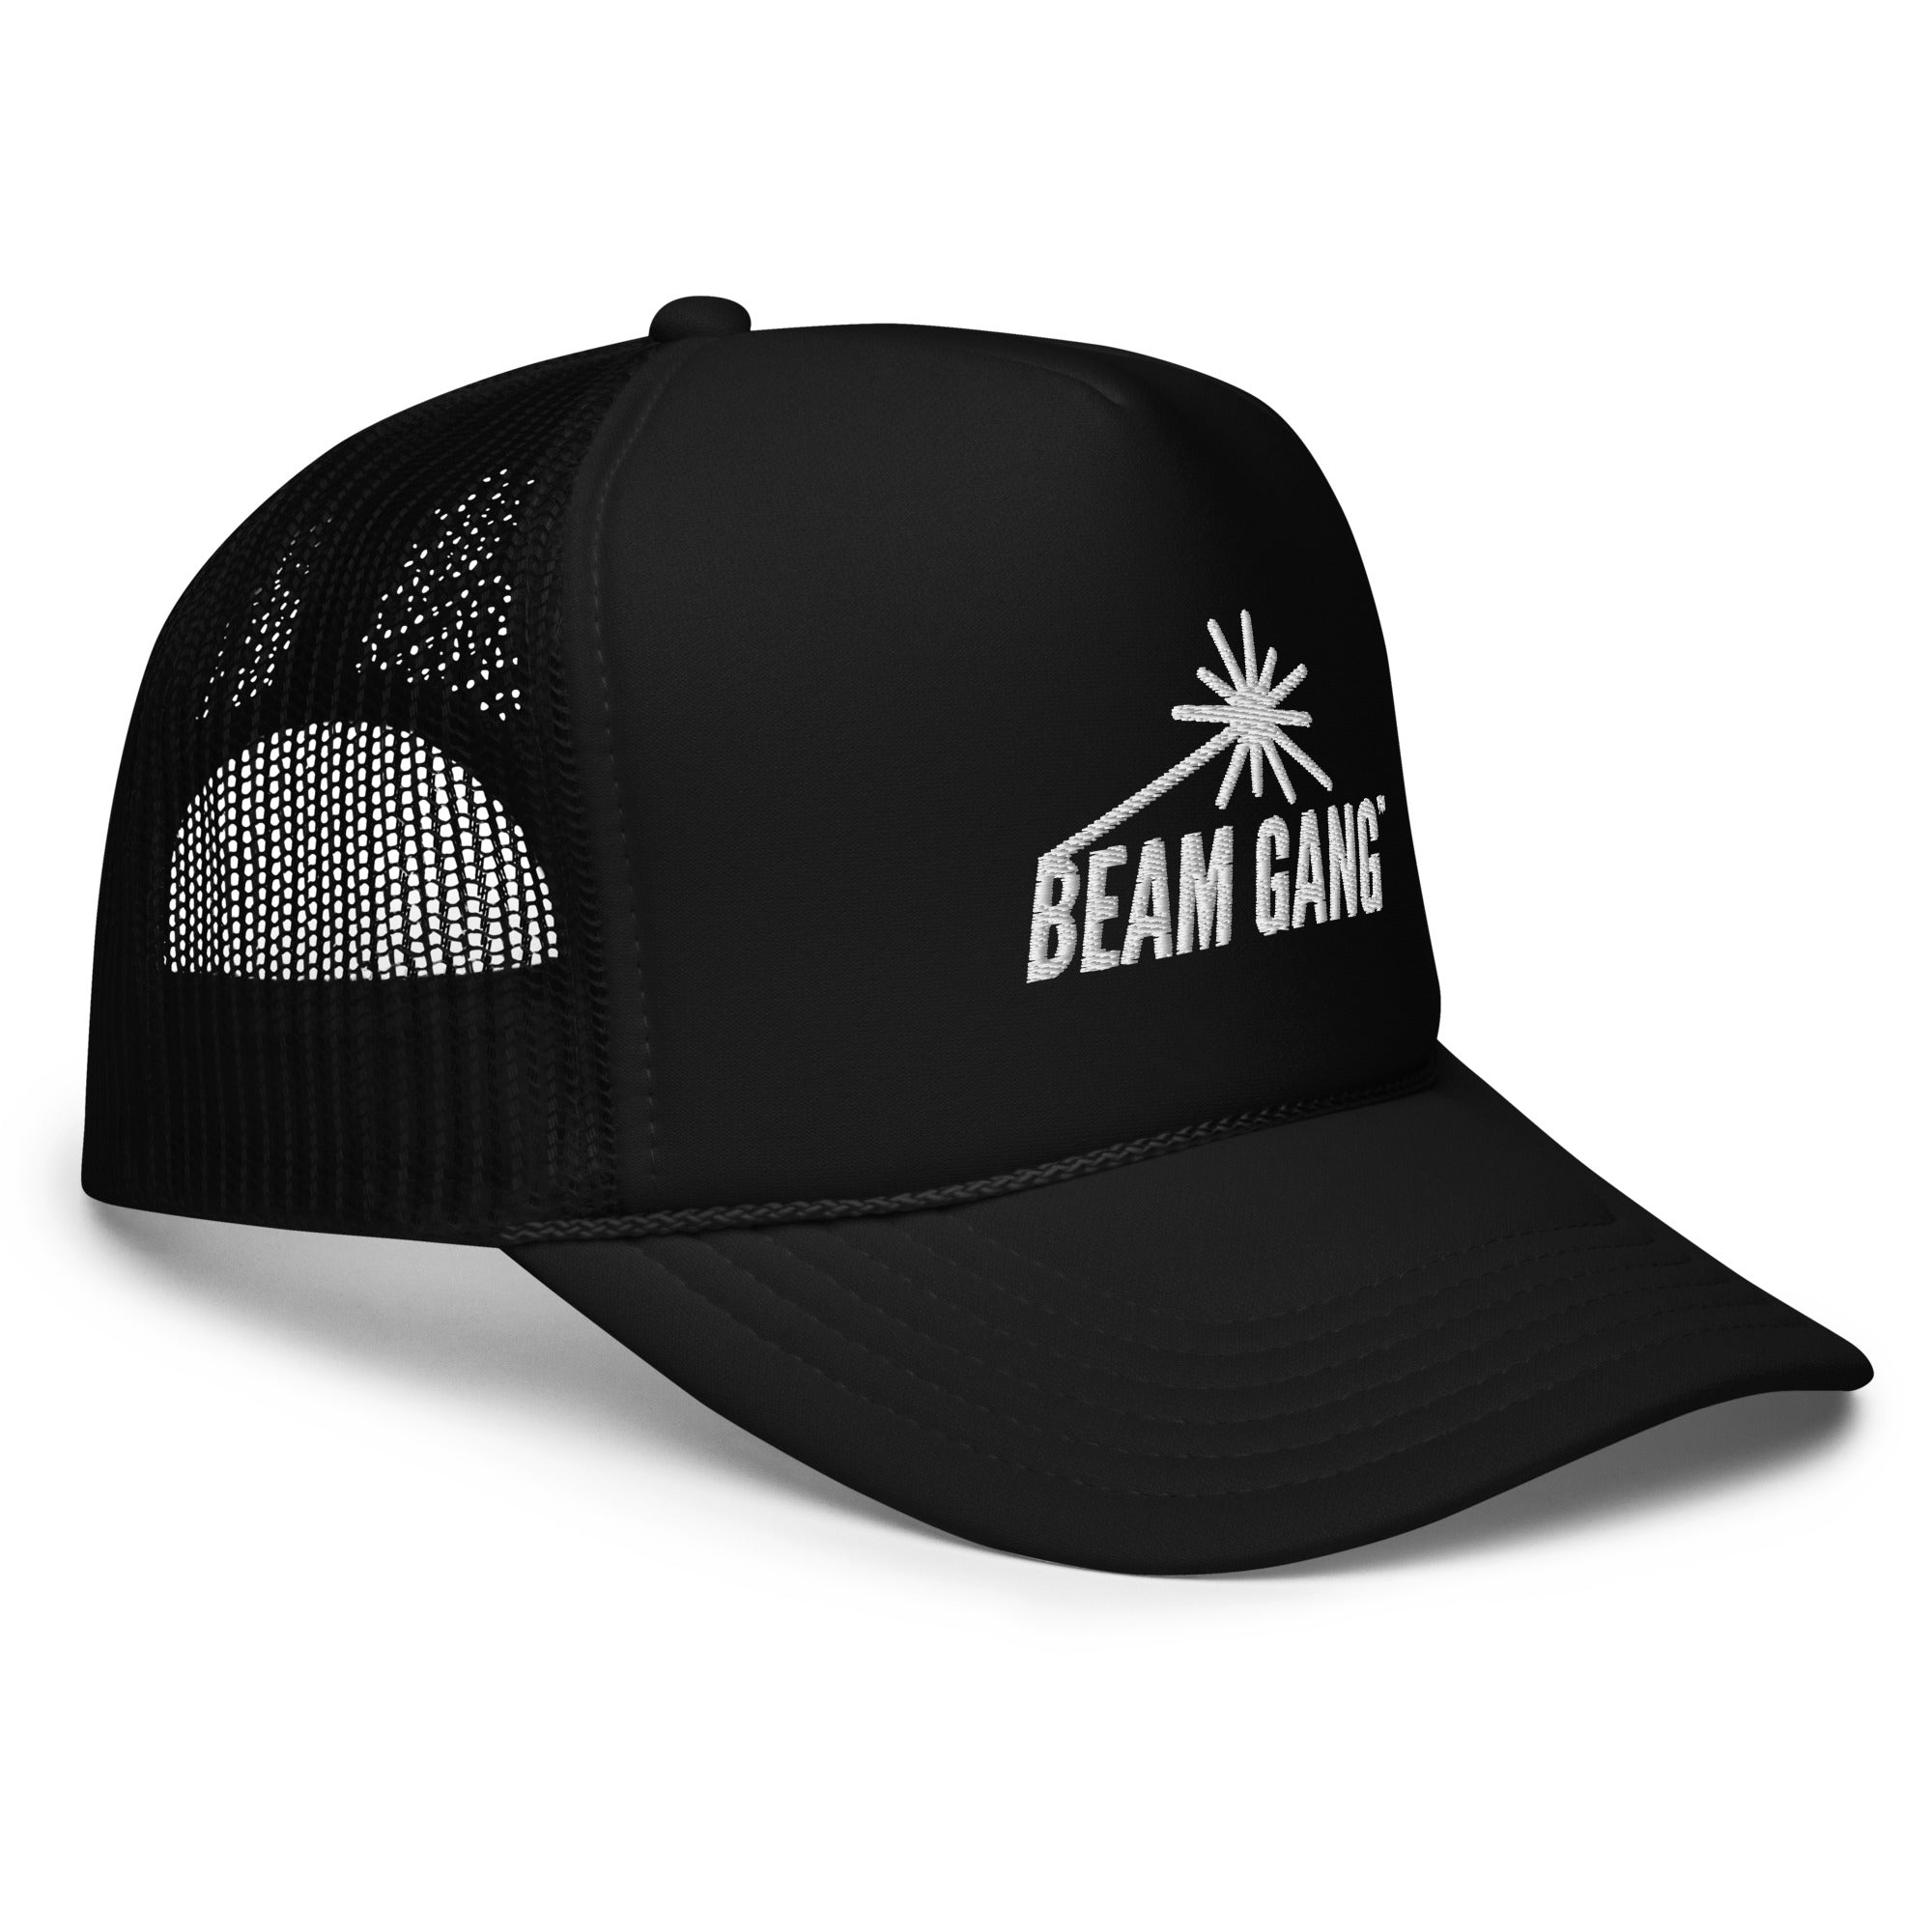 Beam Gang Foam trucker hat